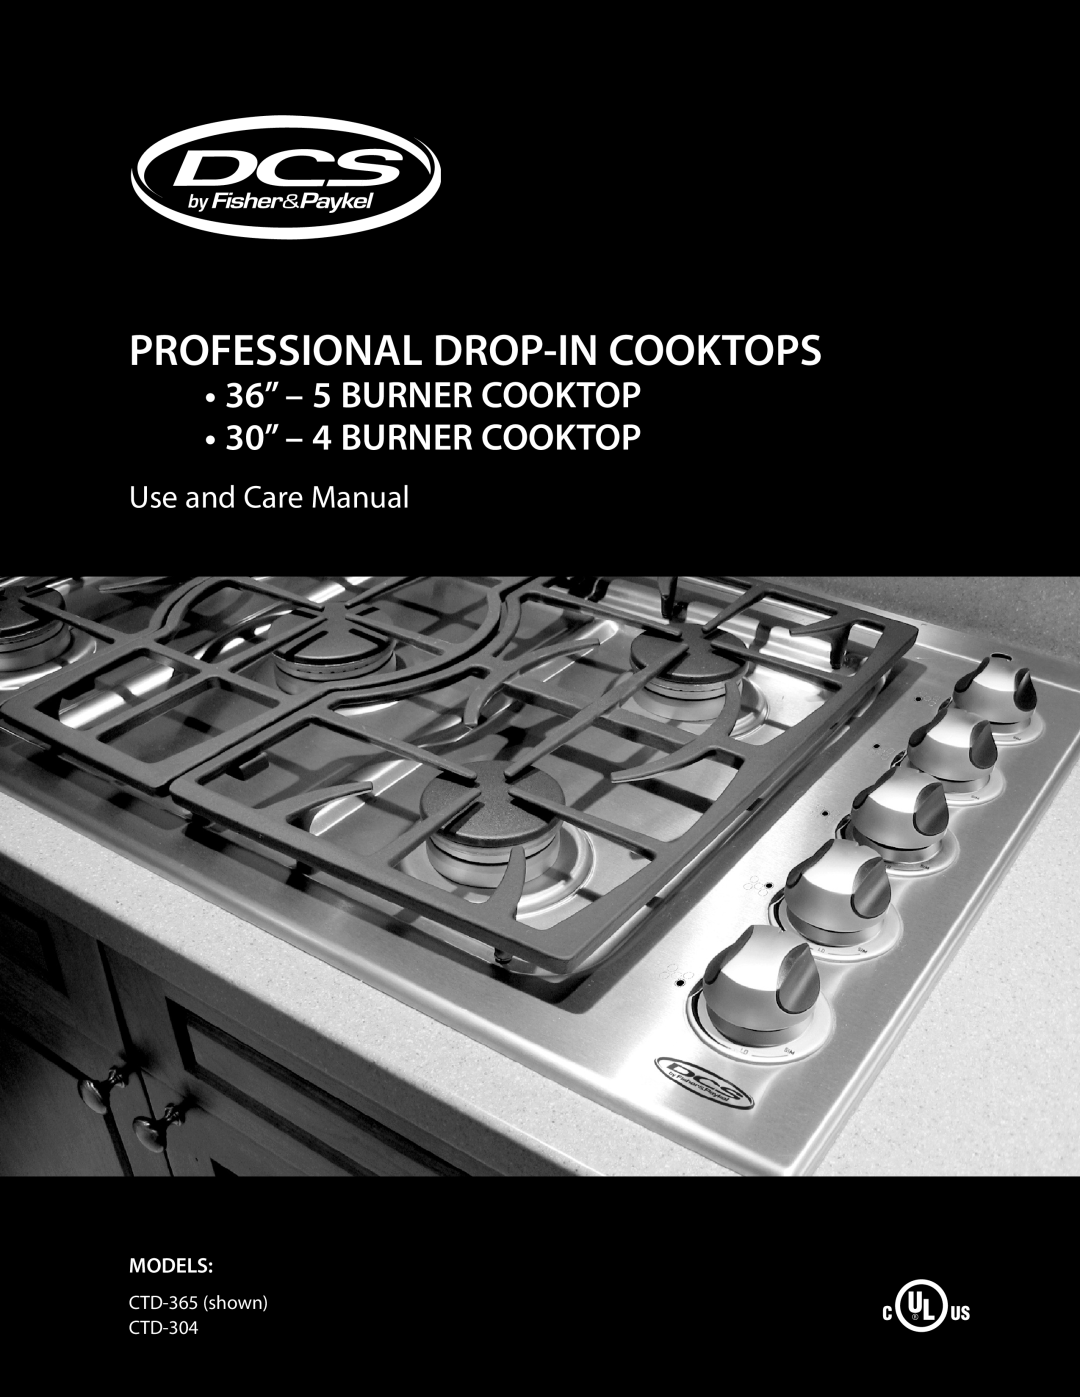 DCS manual 36” - 5 BURNER COOKTOP 30” - 4 BURNER COOKTOP, Use and Care Manual, Models, CTD-365 shown CTD-304 